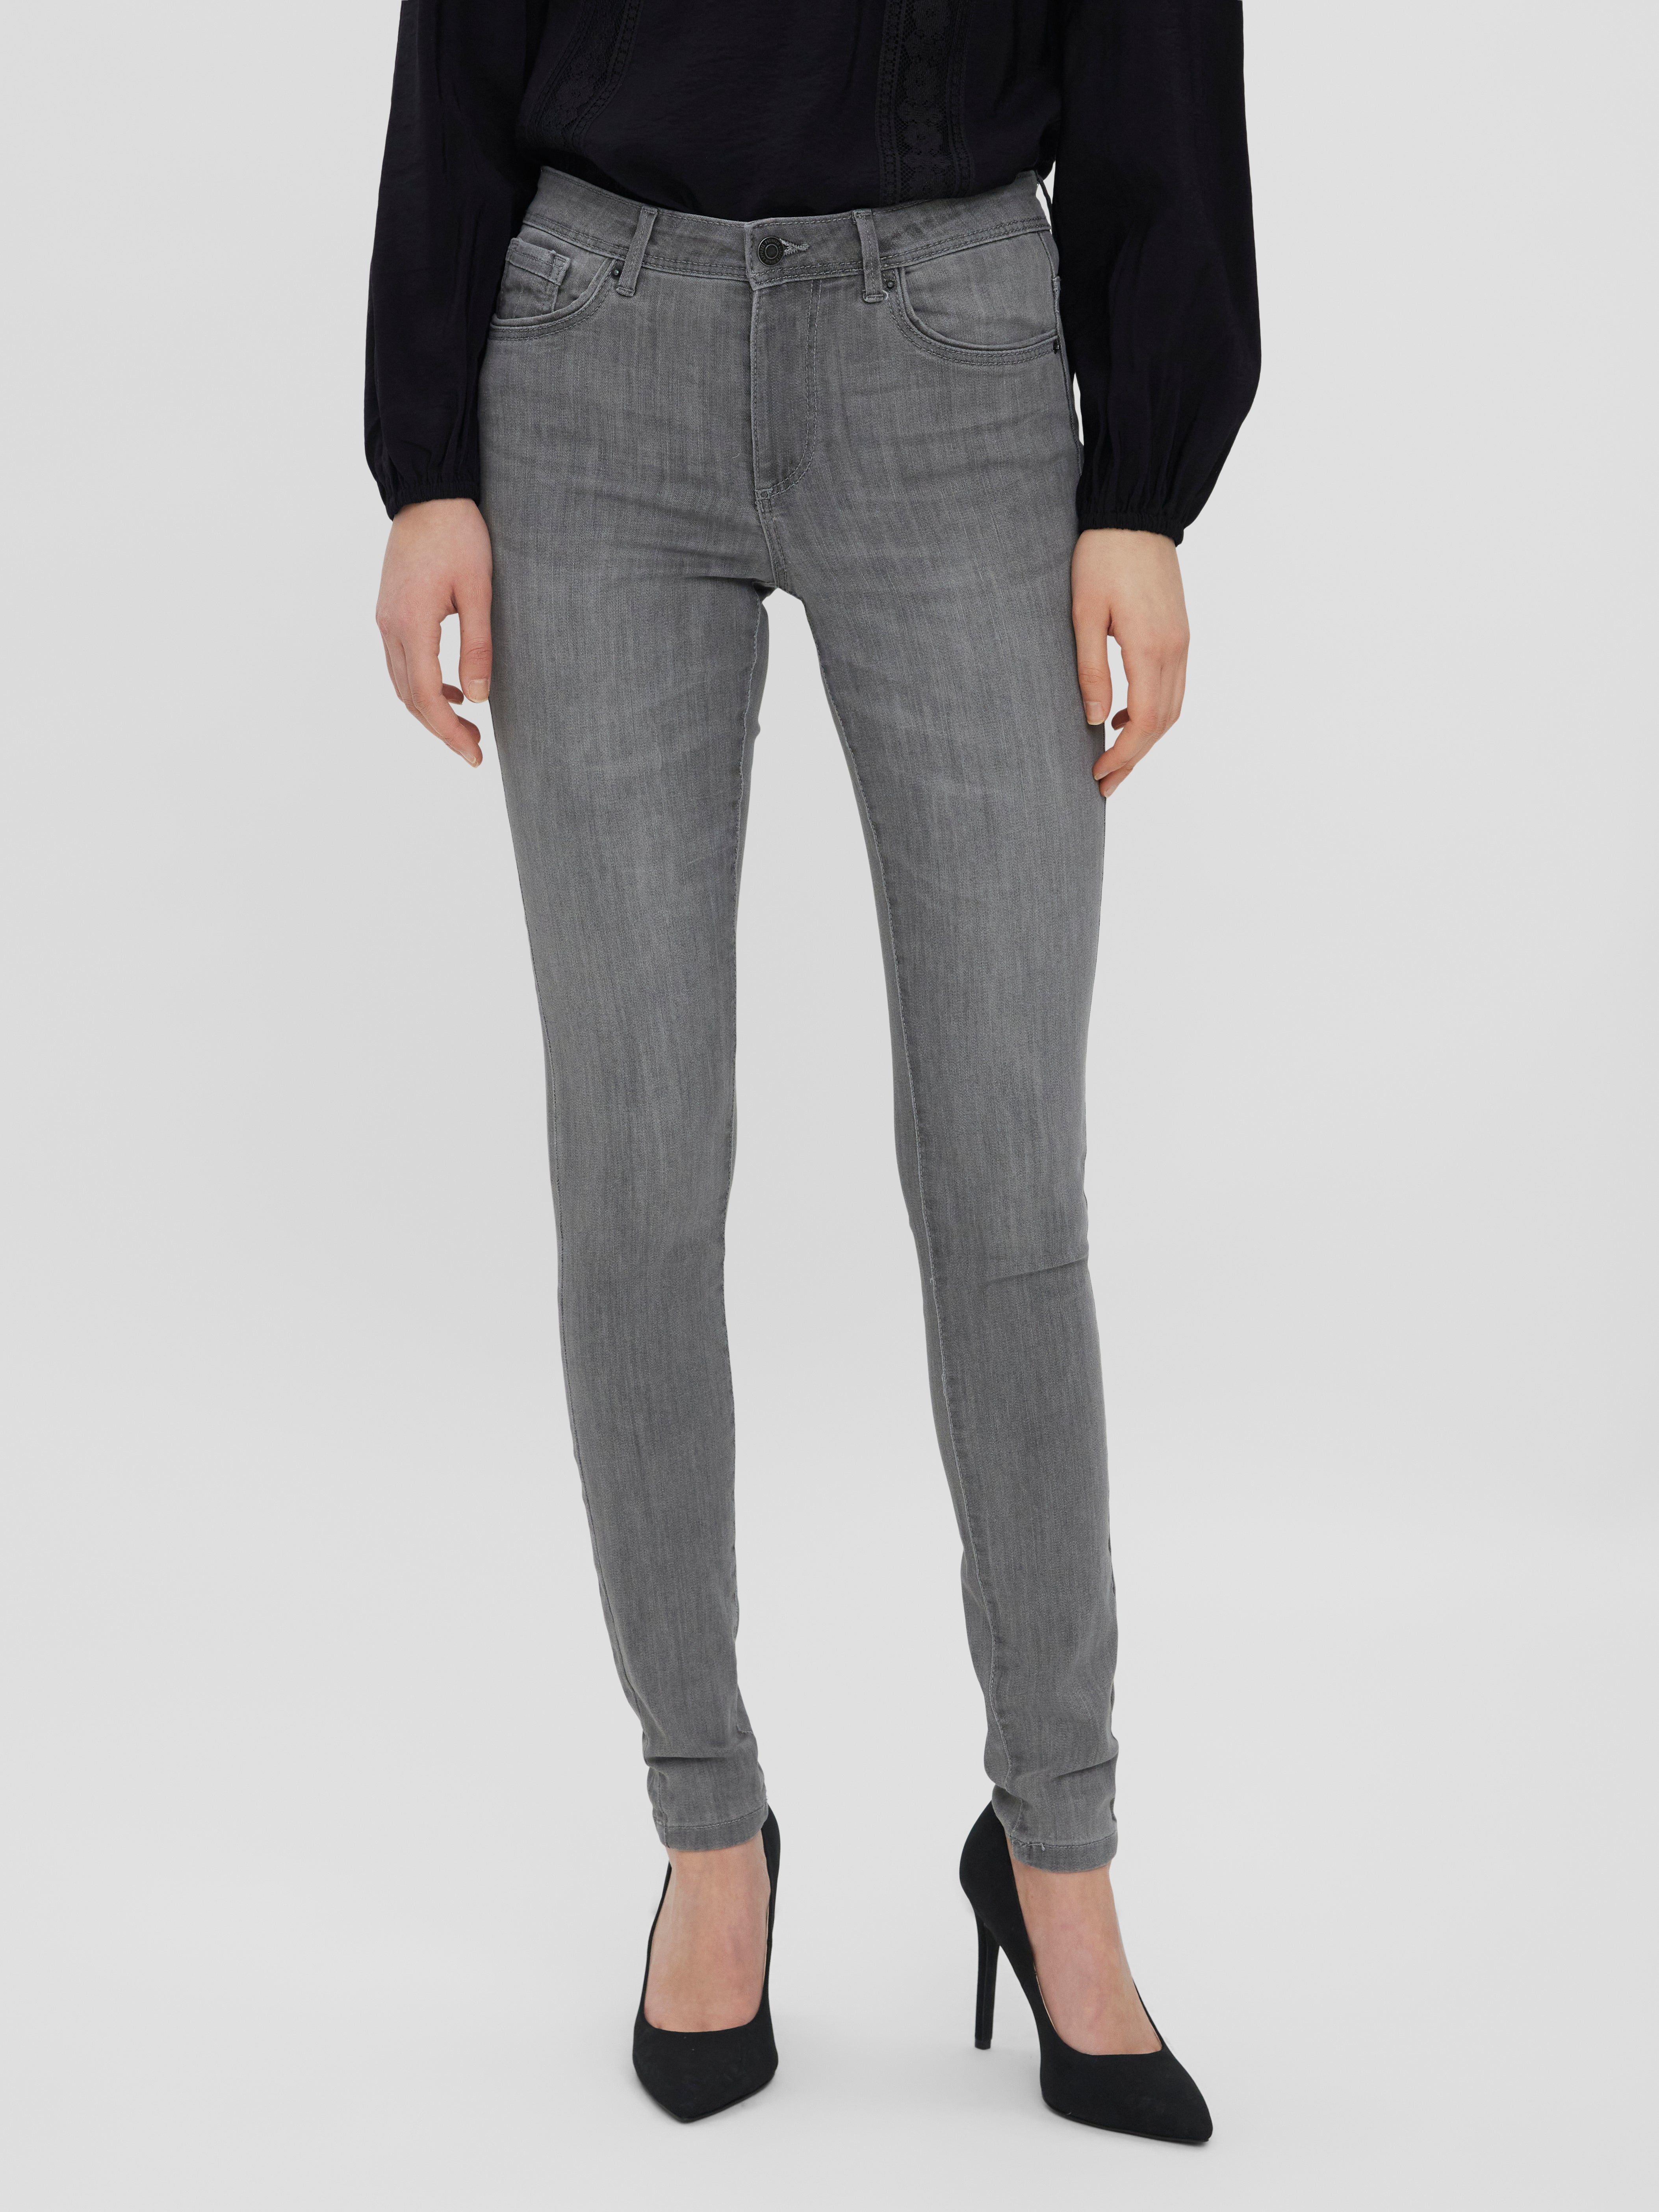 Mode Spijkerbroeken Hoge taille jeans Vero Moda Hoge taille jeans zwart-rood gestreept patroon casual uitstraling 